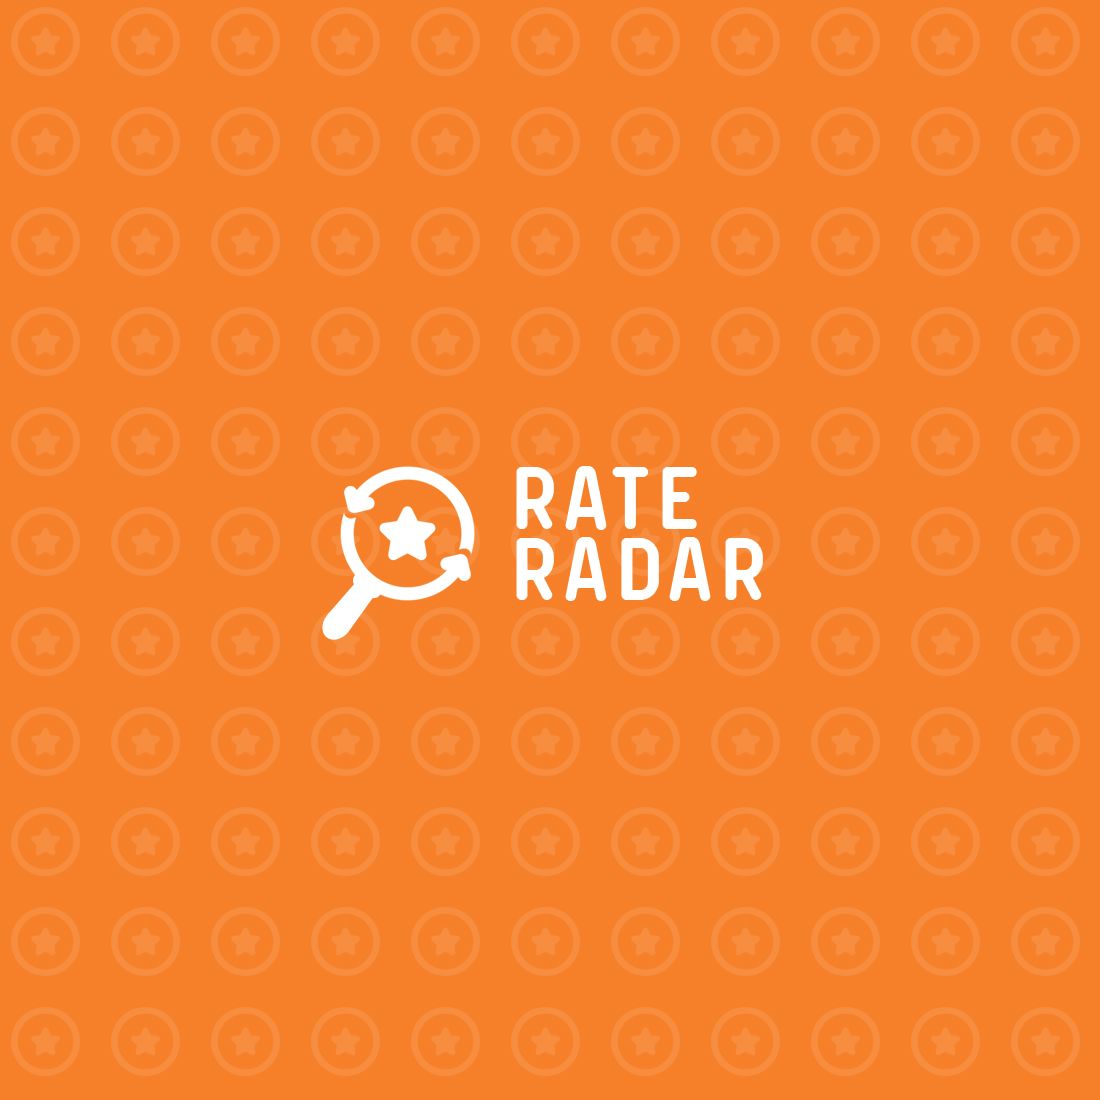 Фирменный стиль + лого для Rate Radar - дизайнер IIsixo_O